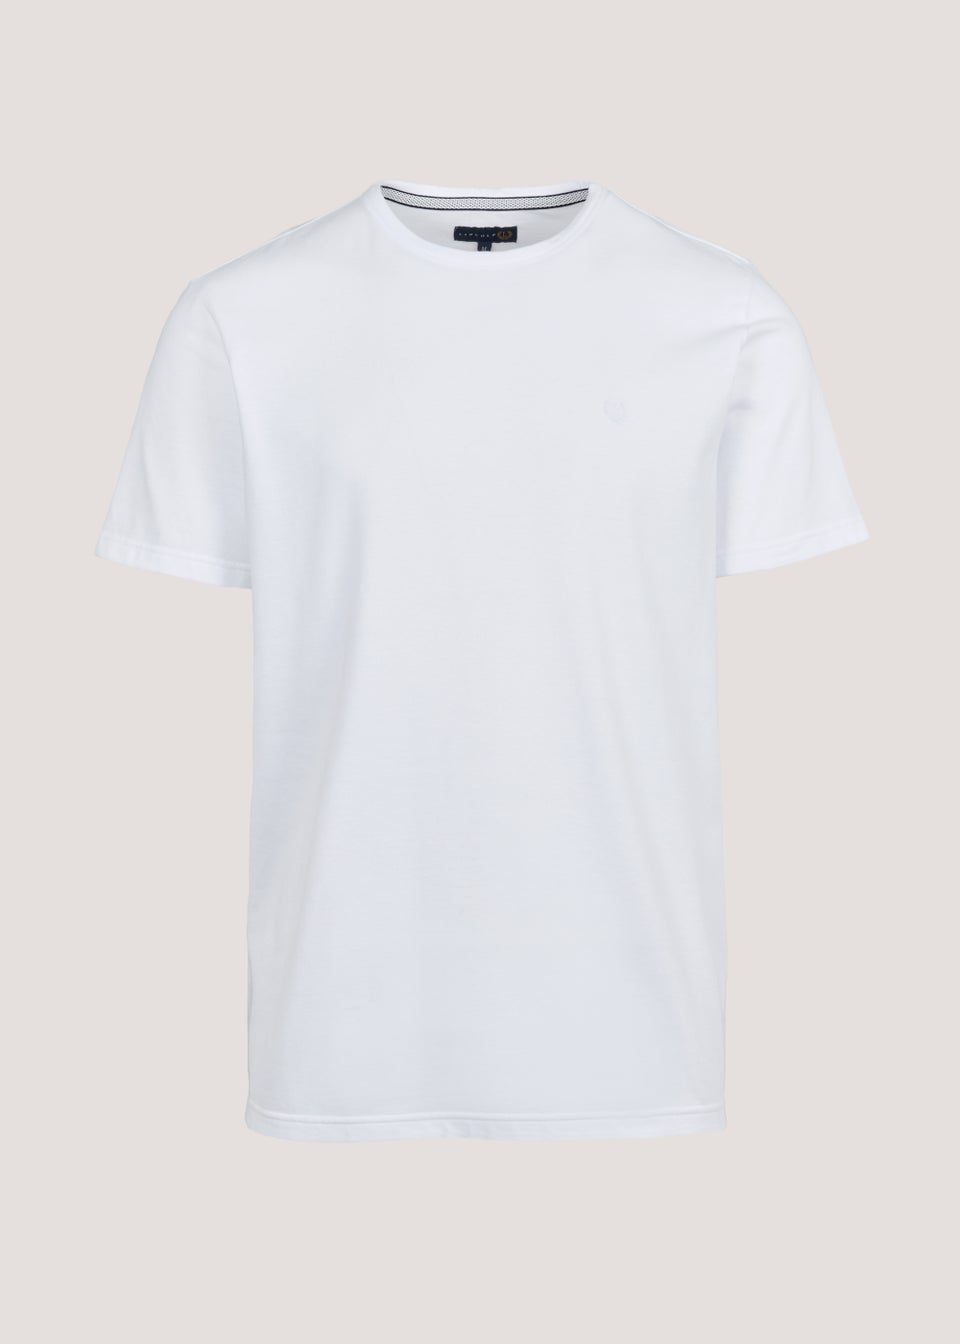 Lincoln White T-Shirt